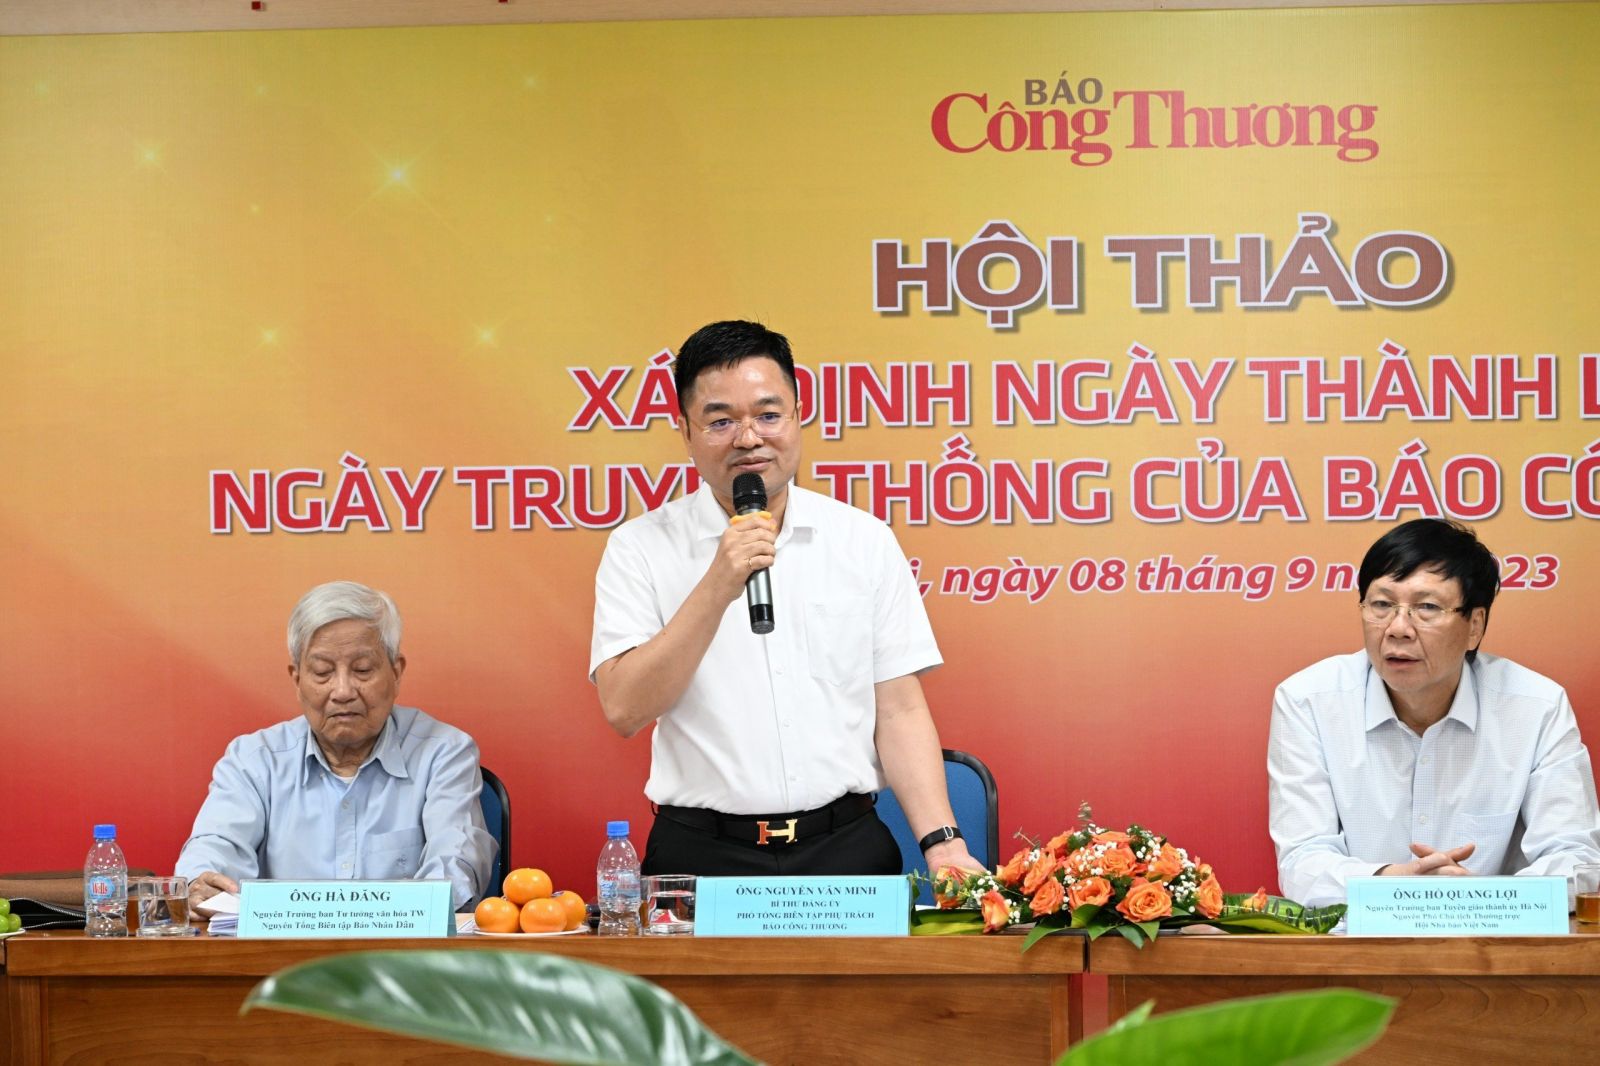 Ông Nguyễn Văn Minh - Phó Tổng Biên tập phụ trách Báo Công Thương phát biểu tại Hội thảo